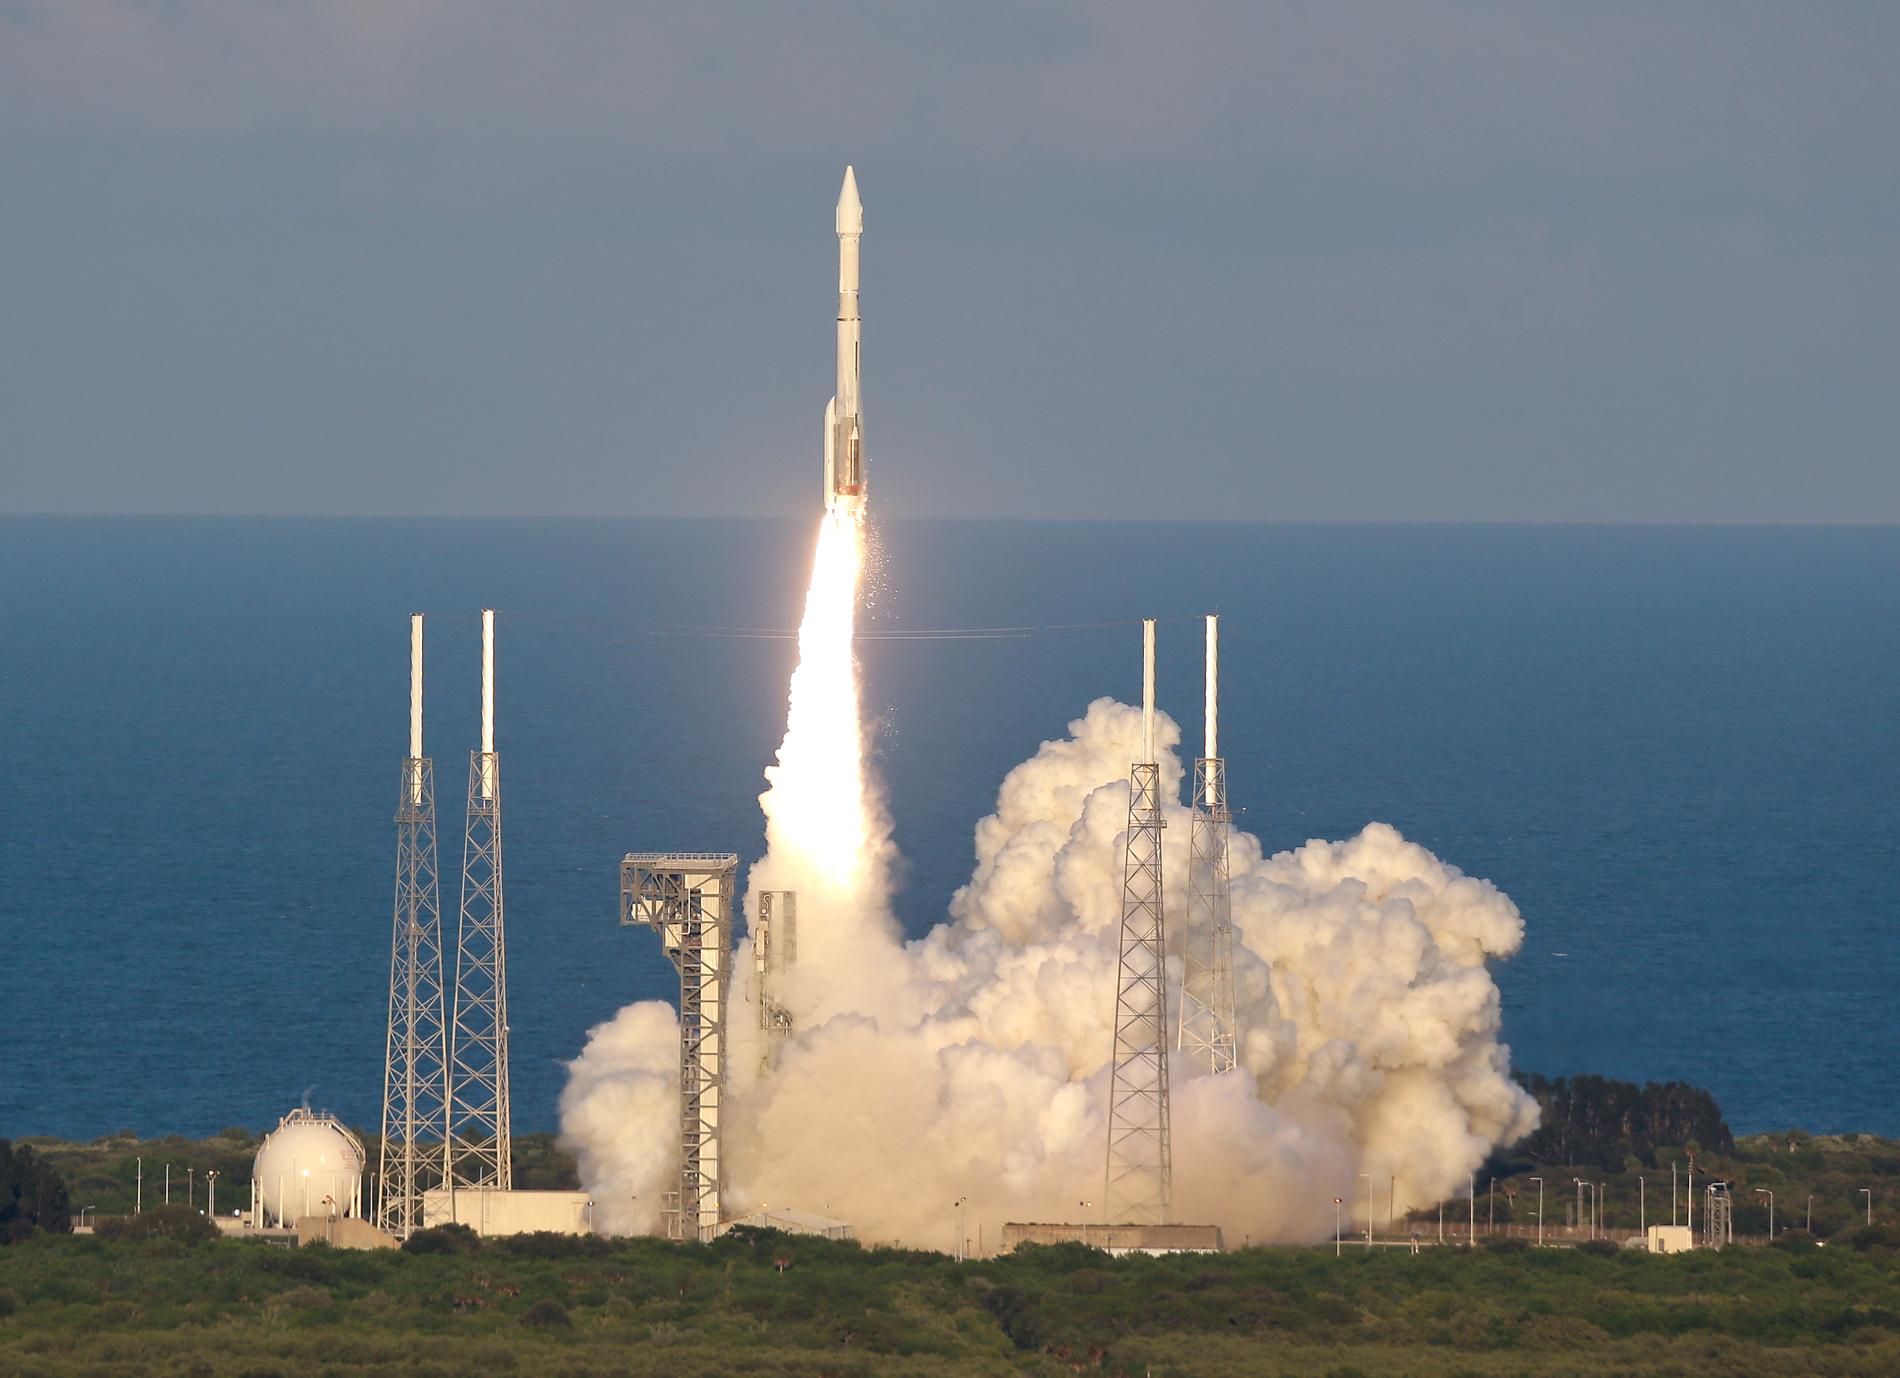 Uppskjutningen från Cape Canaveral i Florida 2016 av den raket som förde med sig Osiris-Rex ut i rymden.